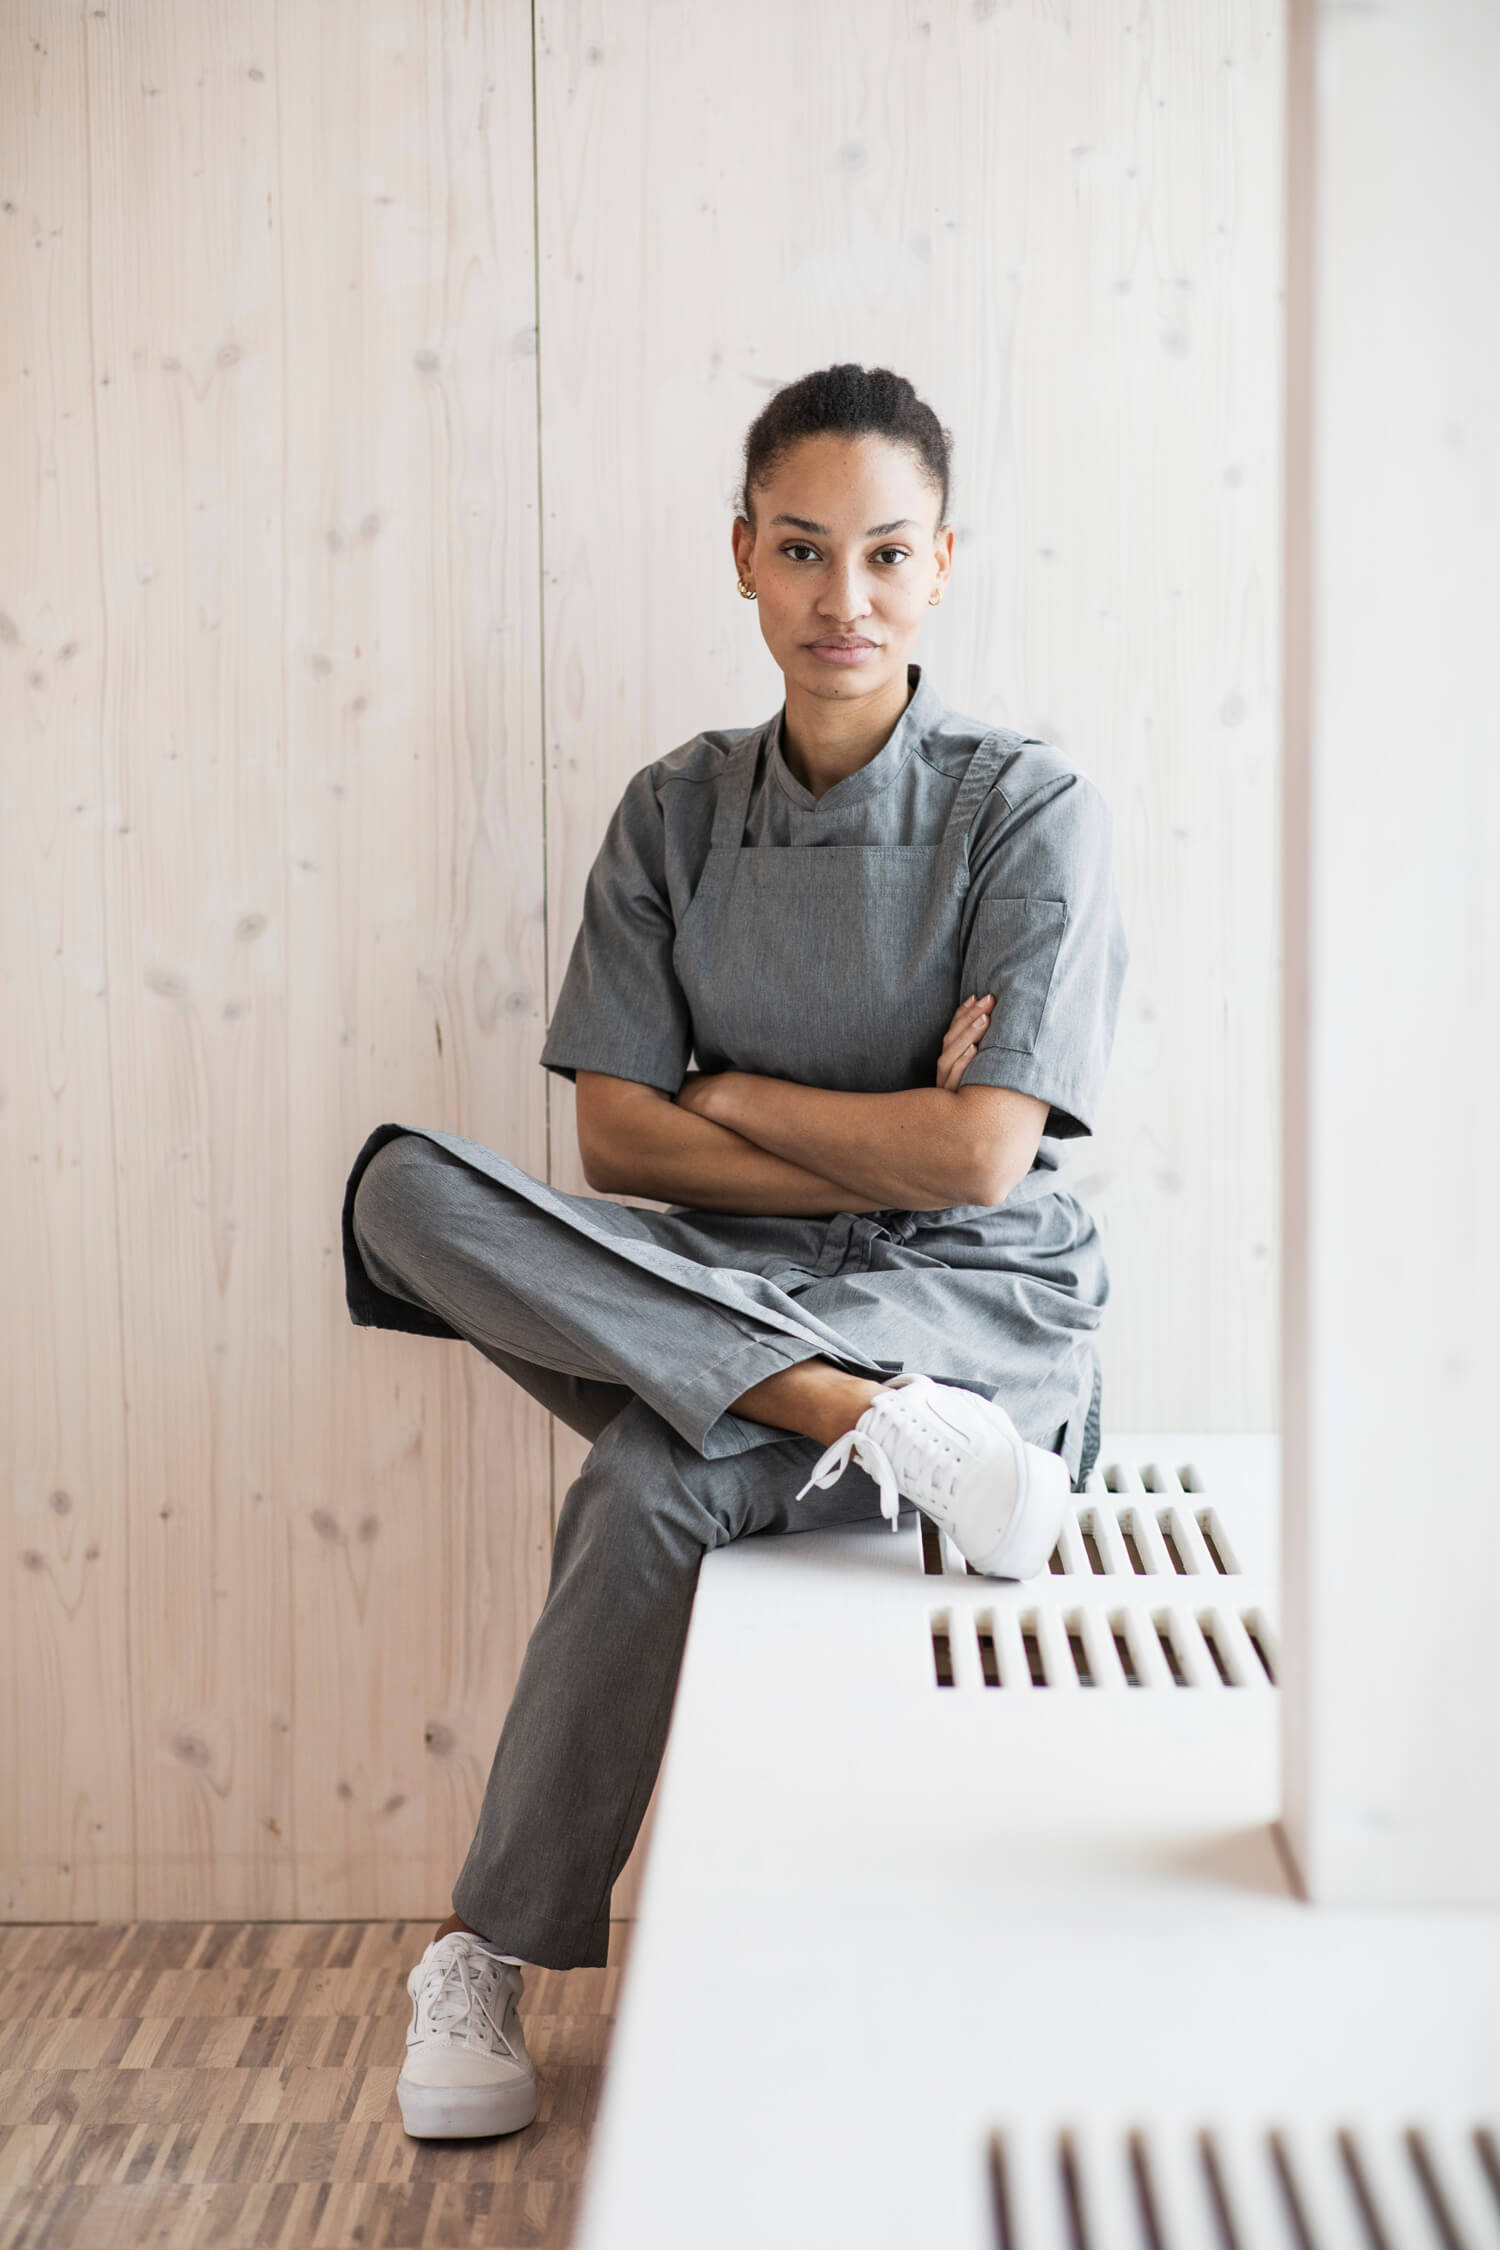 Kvinna i en modern och minimalistisk kök omgivning, klädd i Segers senaste nyheter - en stilren grå på grå uniform som speglar den nya tidens köksmode.